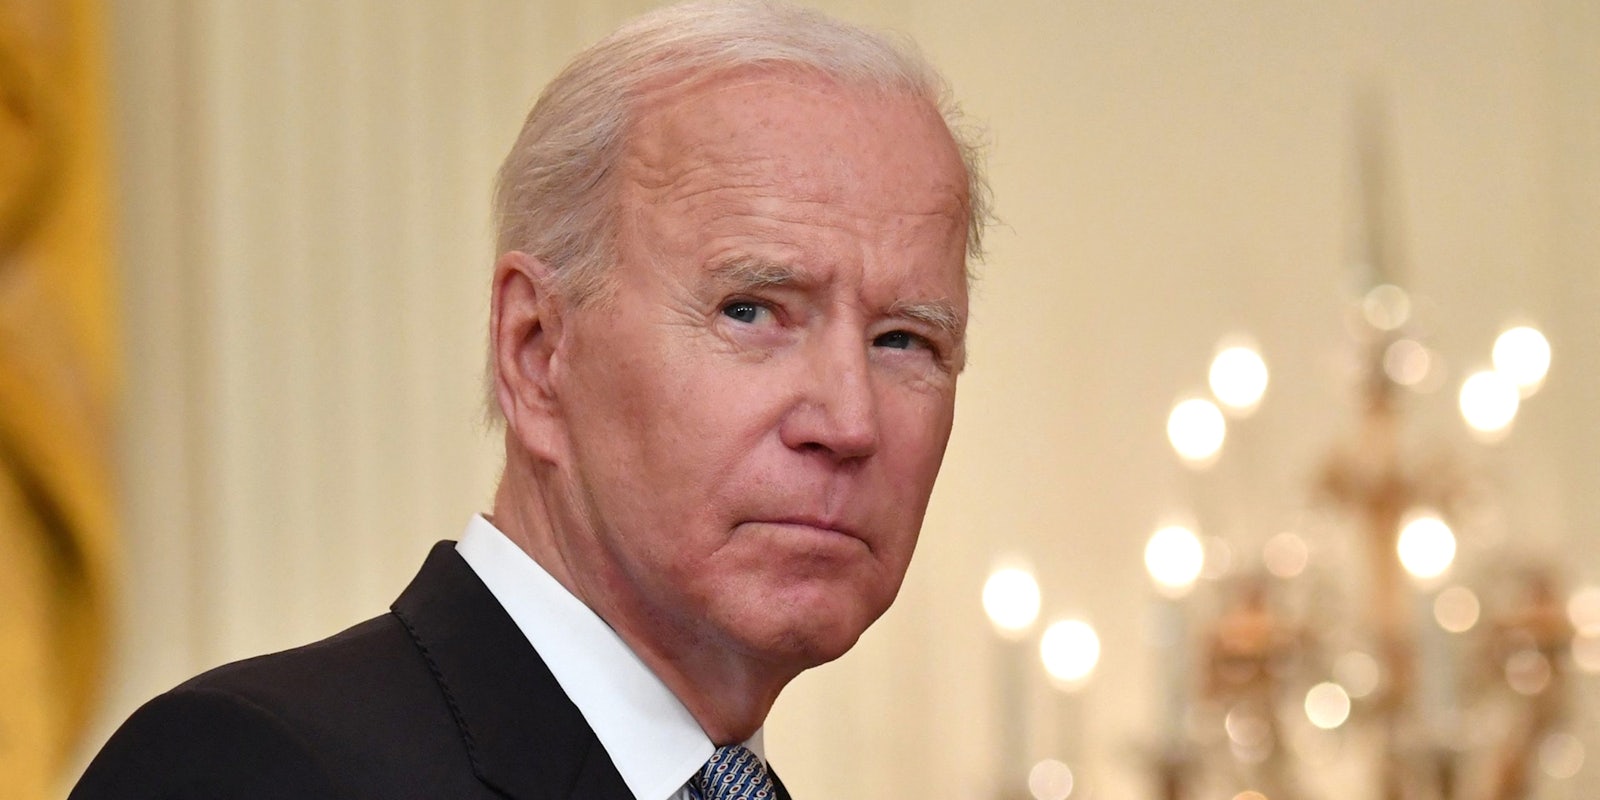 Joe Biden glancing over his shoulder